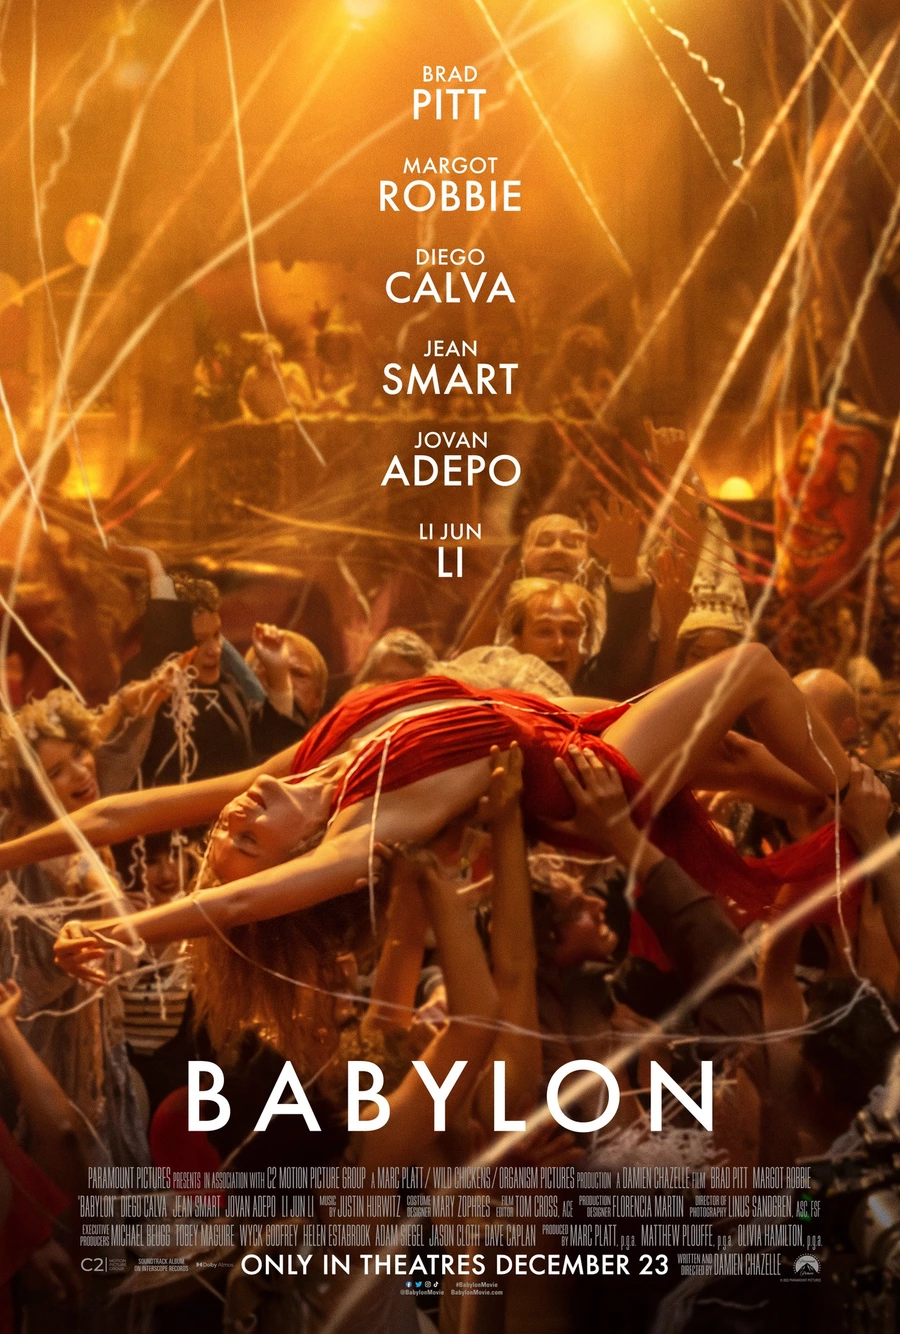 Nuevo cartel de la película Babylon, de Damien Chazelle, protagonizada por Brad Pitt, Margot Robbie y Diego Calva.. Se trata de una historia de ambición desmedida y excesos escandalosos, en la que varios personajes alcanzan cotas máximas y sufren caídas estrepitosas durante un período de decadencia y depravación desenfrenadas en el primer Hollywood.

En los cines a partir del 19 de enero.